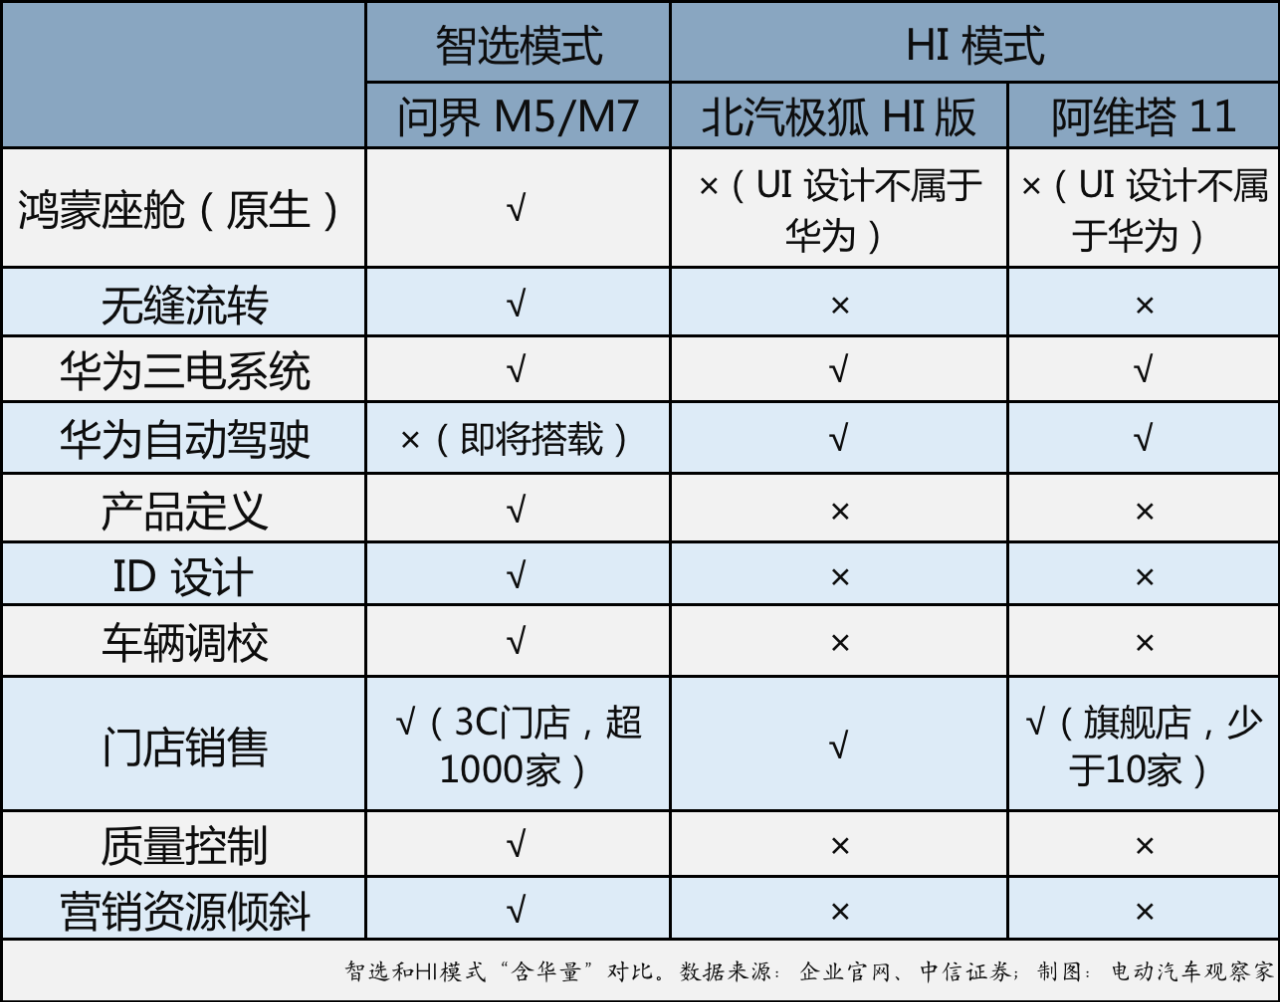 Comparison between Xuan and HI Models